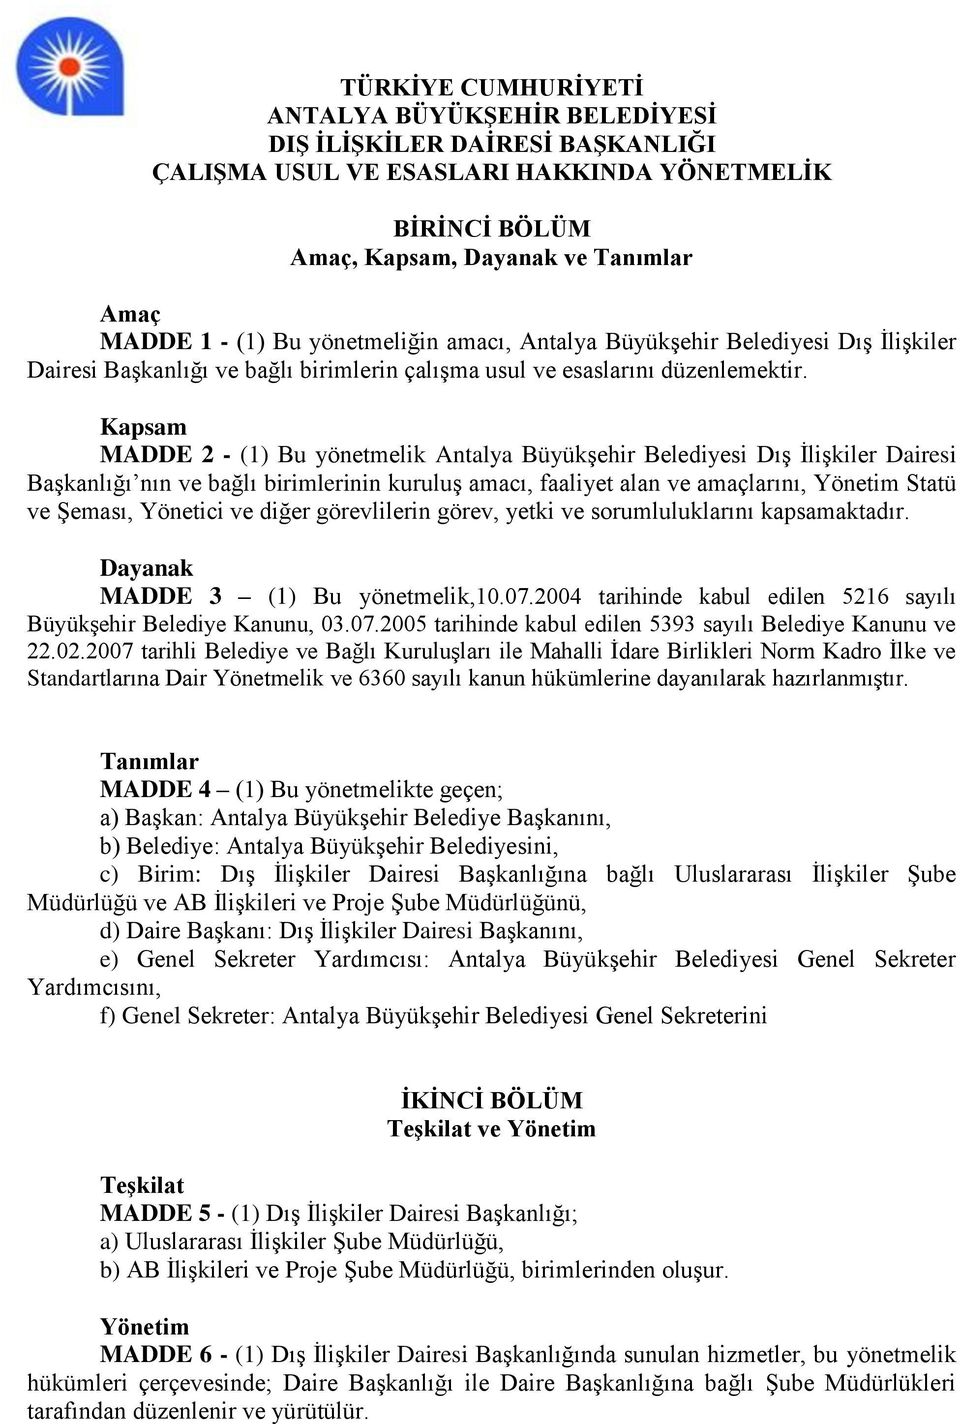 Kapsam MADDE 2 - (1) Bu yönetmelik Antalya Büyükşehir Belediyesi Dış İlişkiler Dairesi Başkanlığı nın ve bağlı birimlerinin kuruluş amacı, faaliyet alan ve amaçlarını, Yönetim Statü ve Şeması,